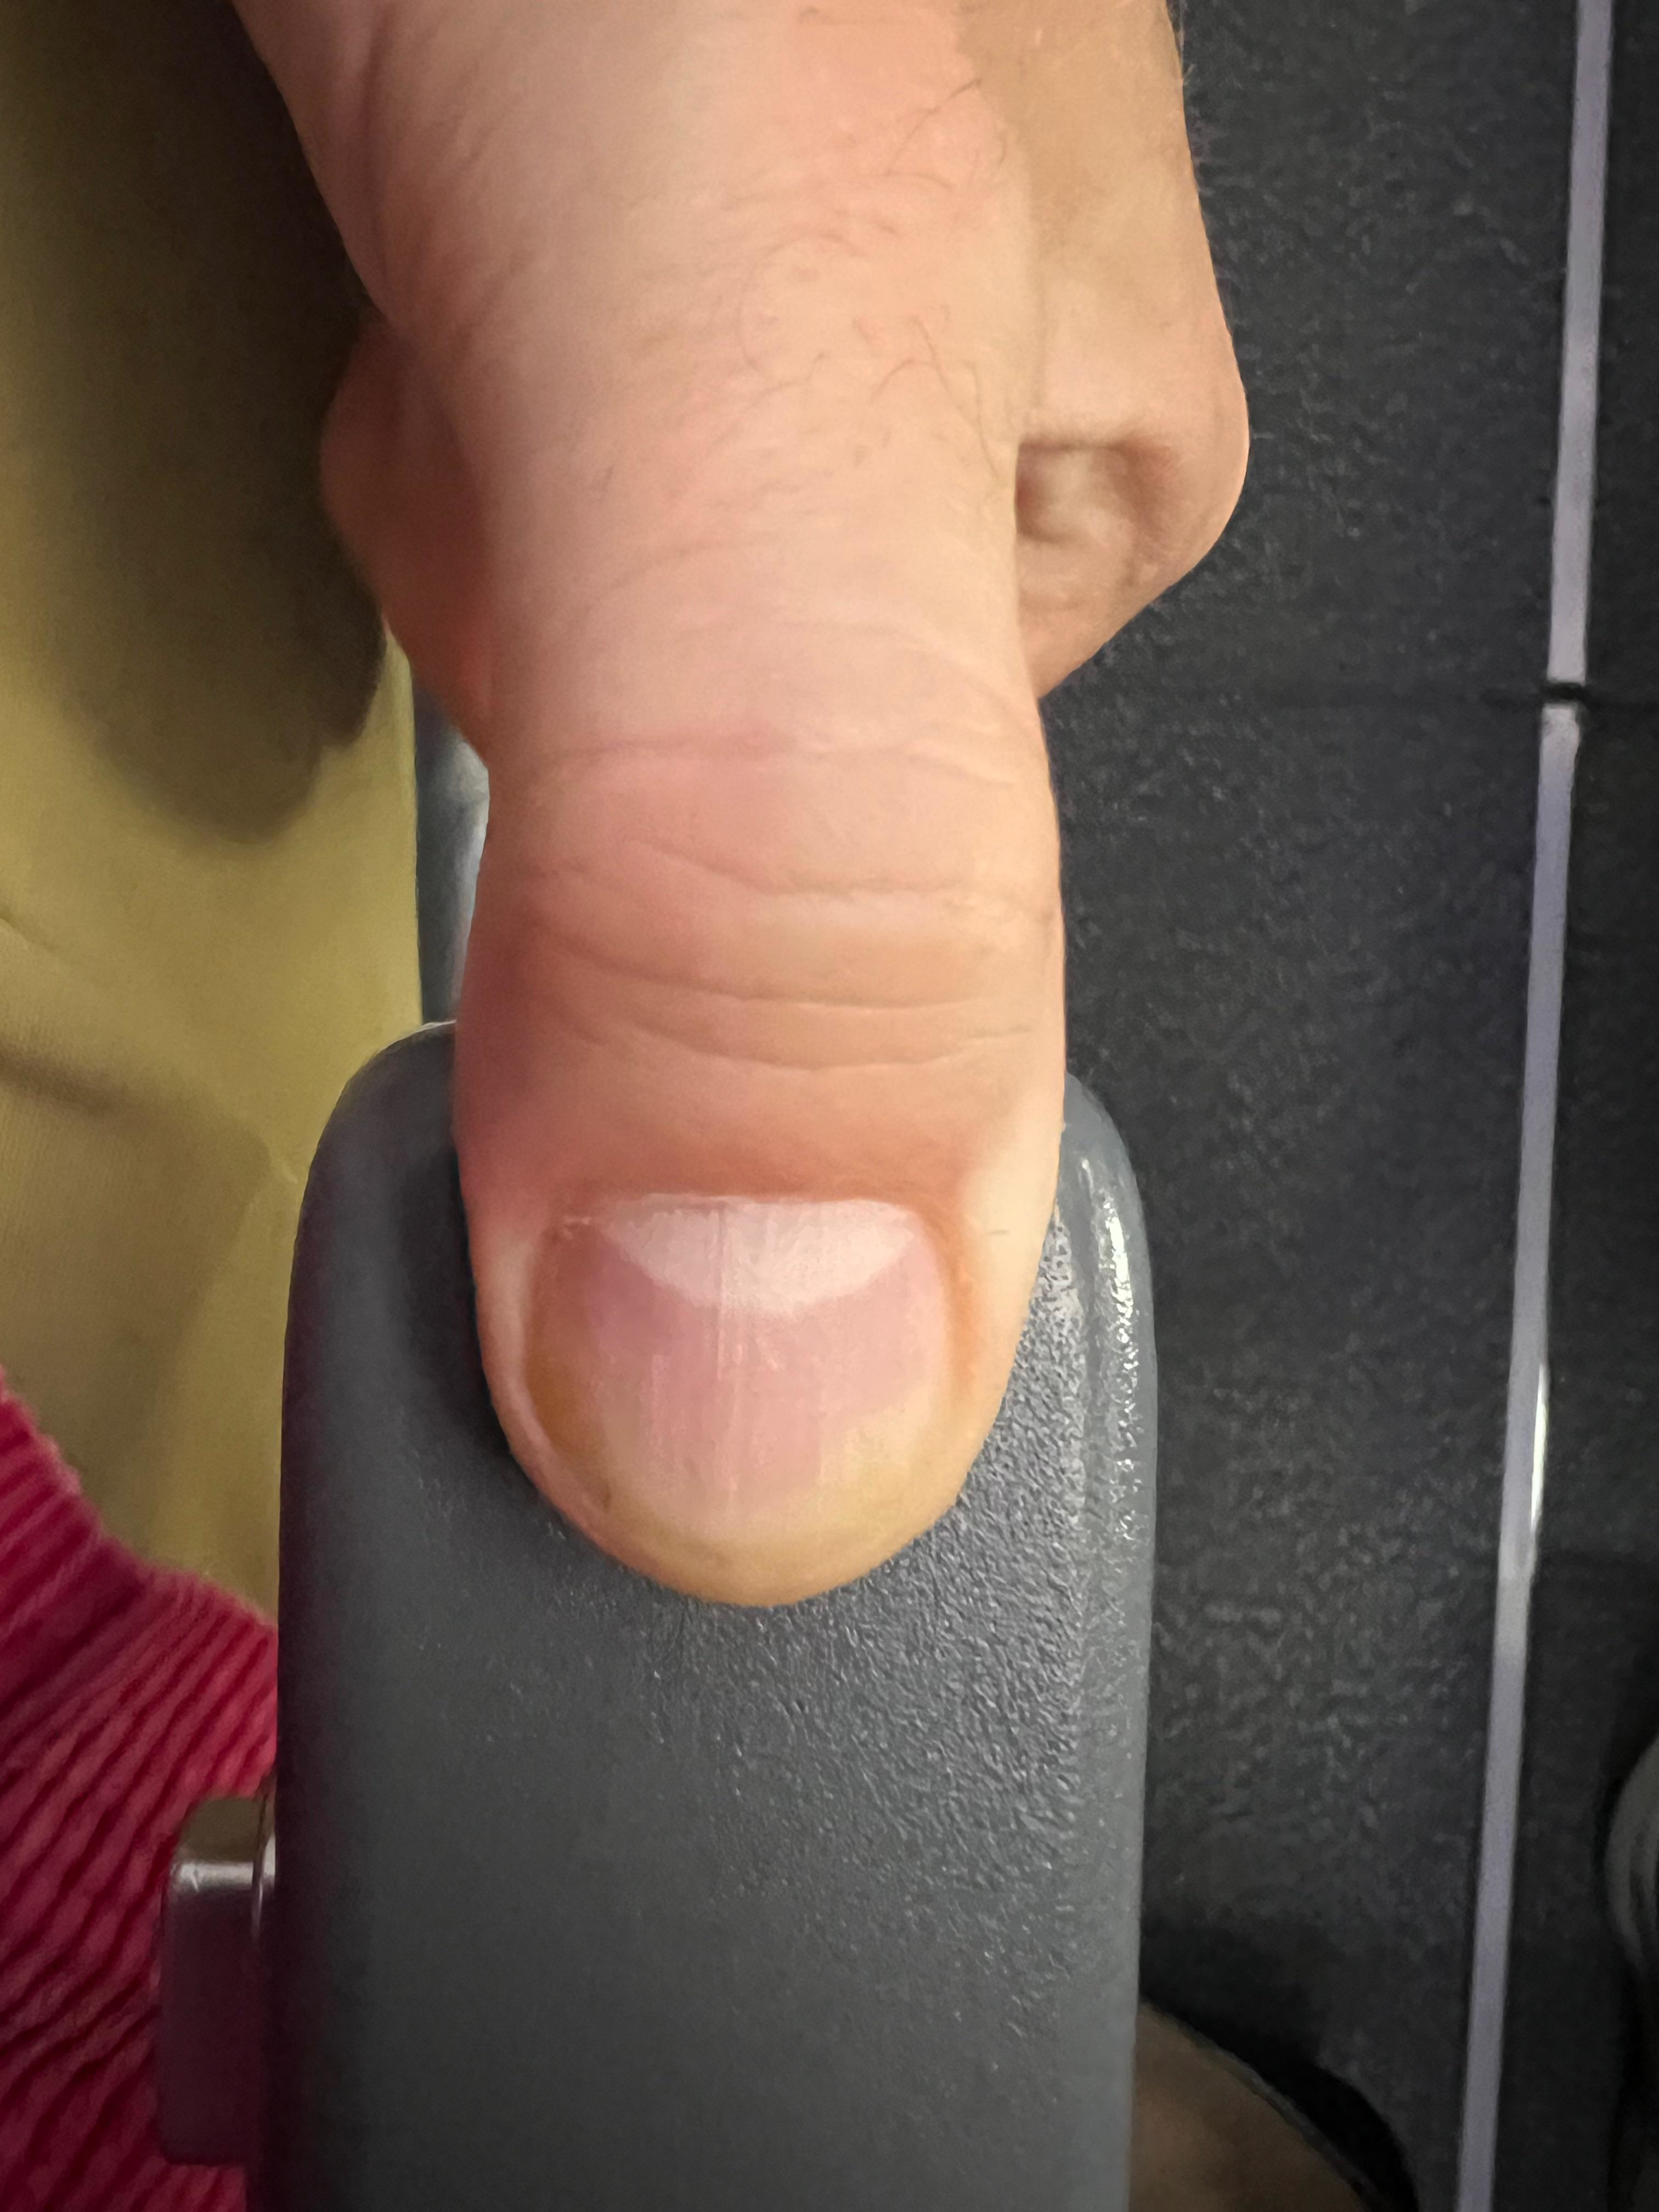 A thumb on an armrest